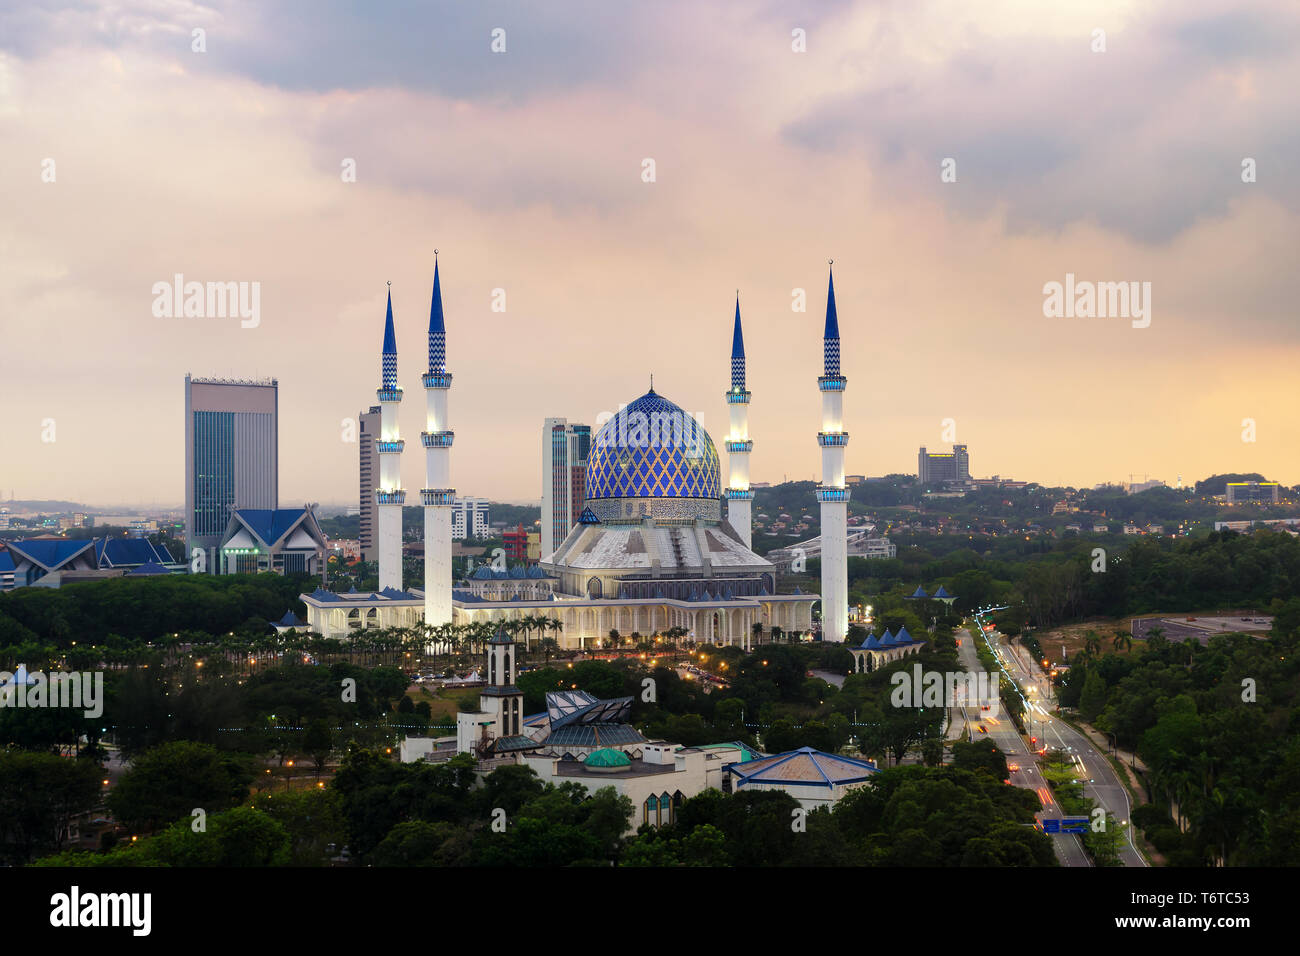 La belle le Sultan Salahuddin Abdul Aziz Shah Mosquée (aussi connu comme la Mosquée Bleue) situé à Shah Alam, Selangor, Malaisie. Banque D'Images